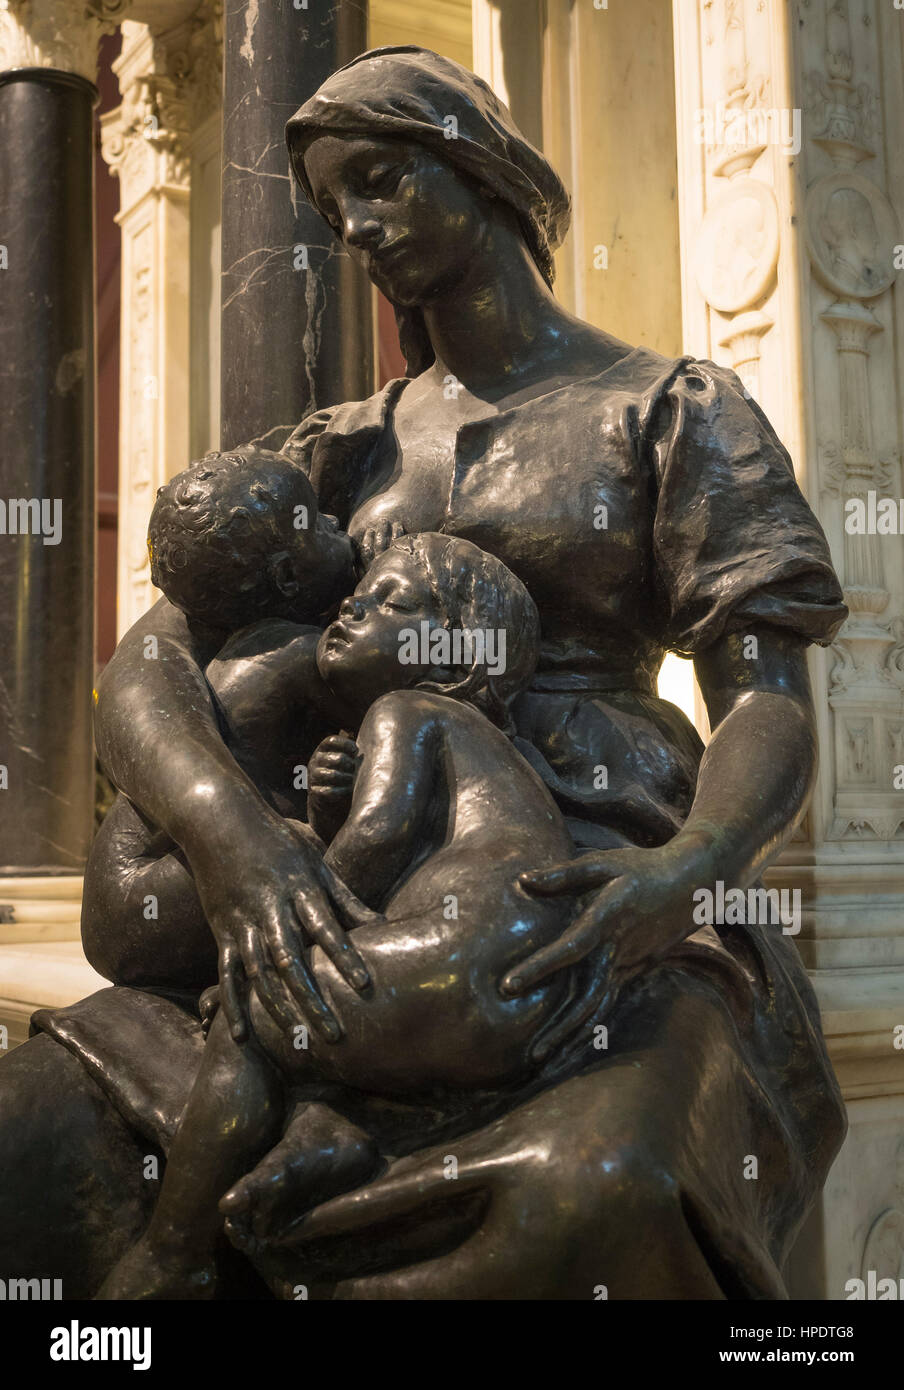 La charité universelle, des statues en bronze par le sculpteur Paul Dubois, cénotaphe du général de la Moricière, cathédrale de Saint-Pierre-et-Saint-Paul, Nantes Banque D'Images